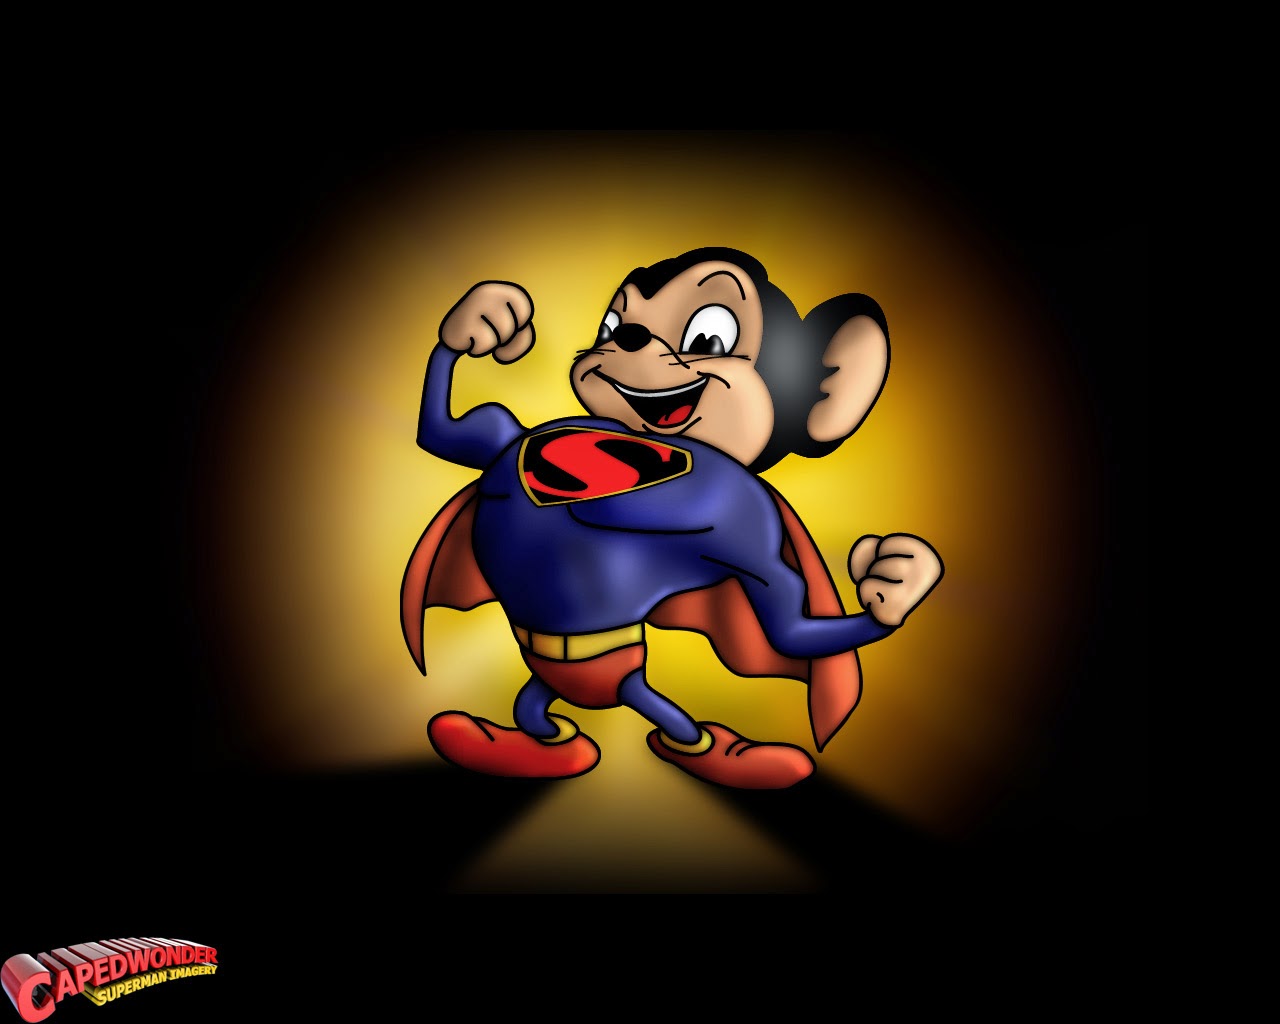 Kumpulan Gambar Mighty Mouse | Gambar Lucu Terbaru Cartoon Animation Pictures1280 x 1024